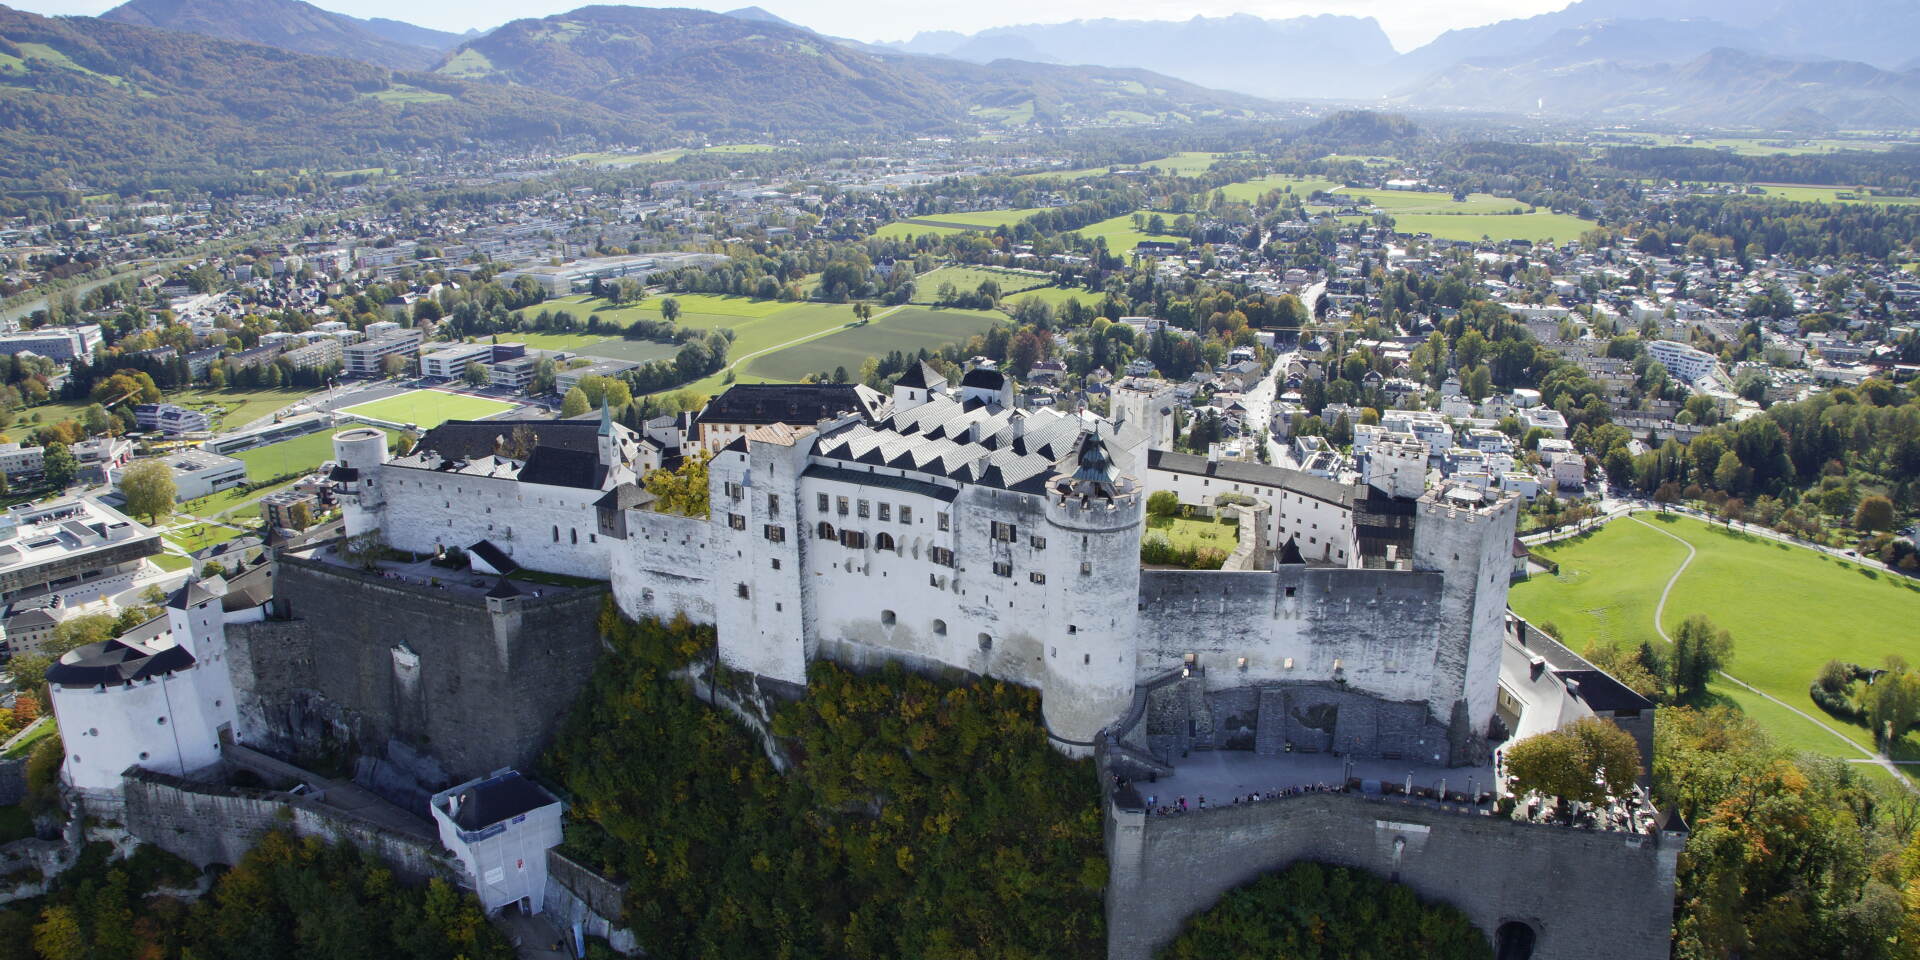 Festung Hohensalzburg - Festung aus der Luft © Salzburger Burgen und Schlösser